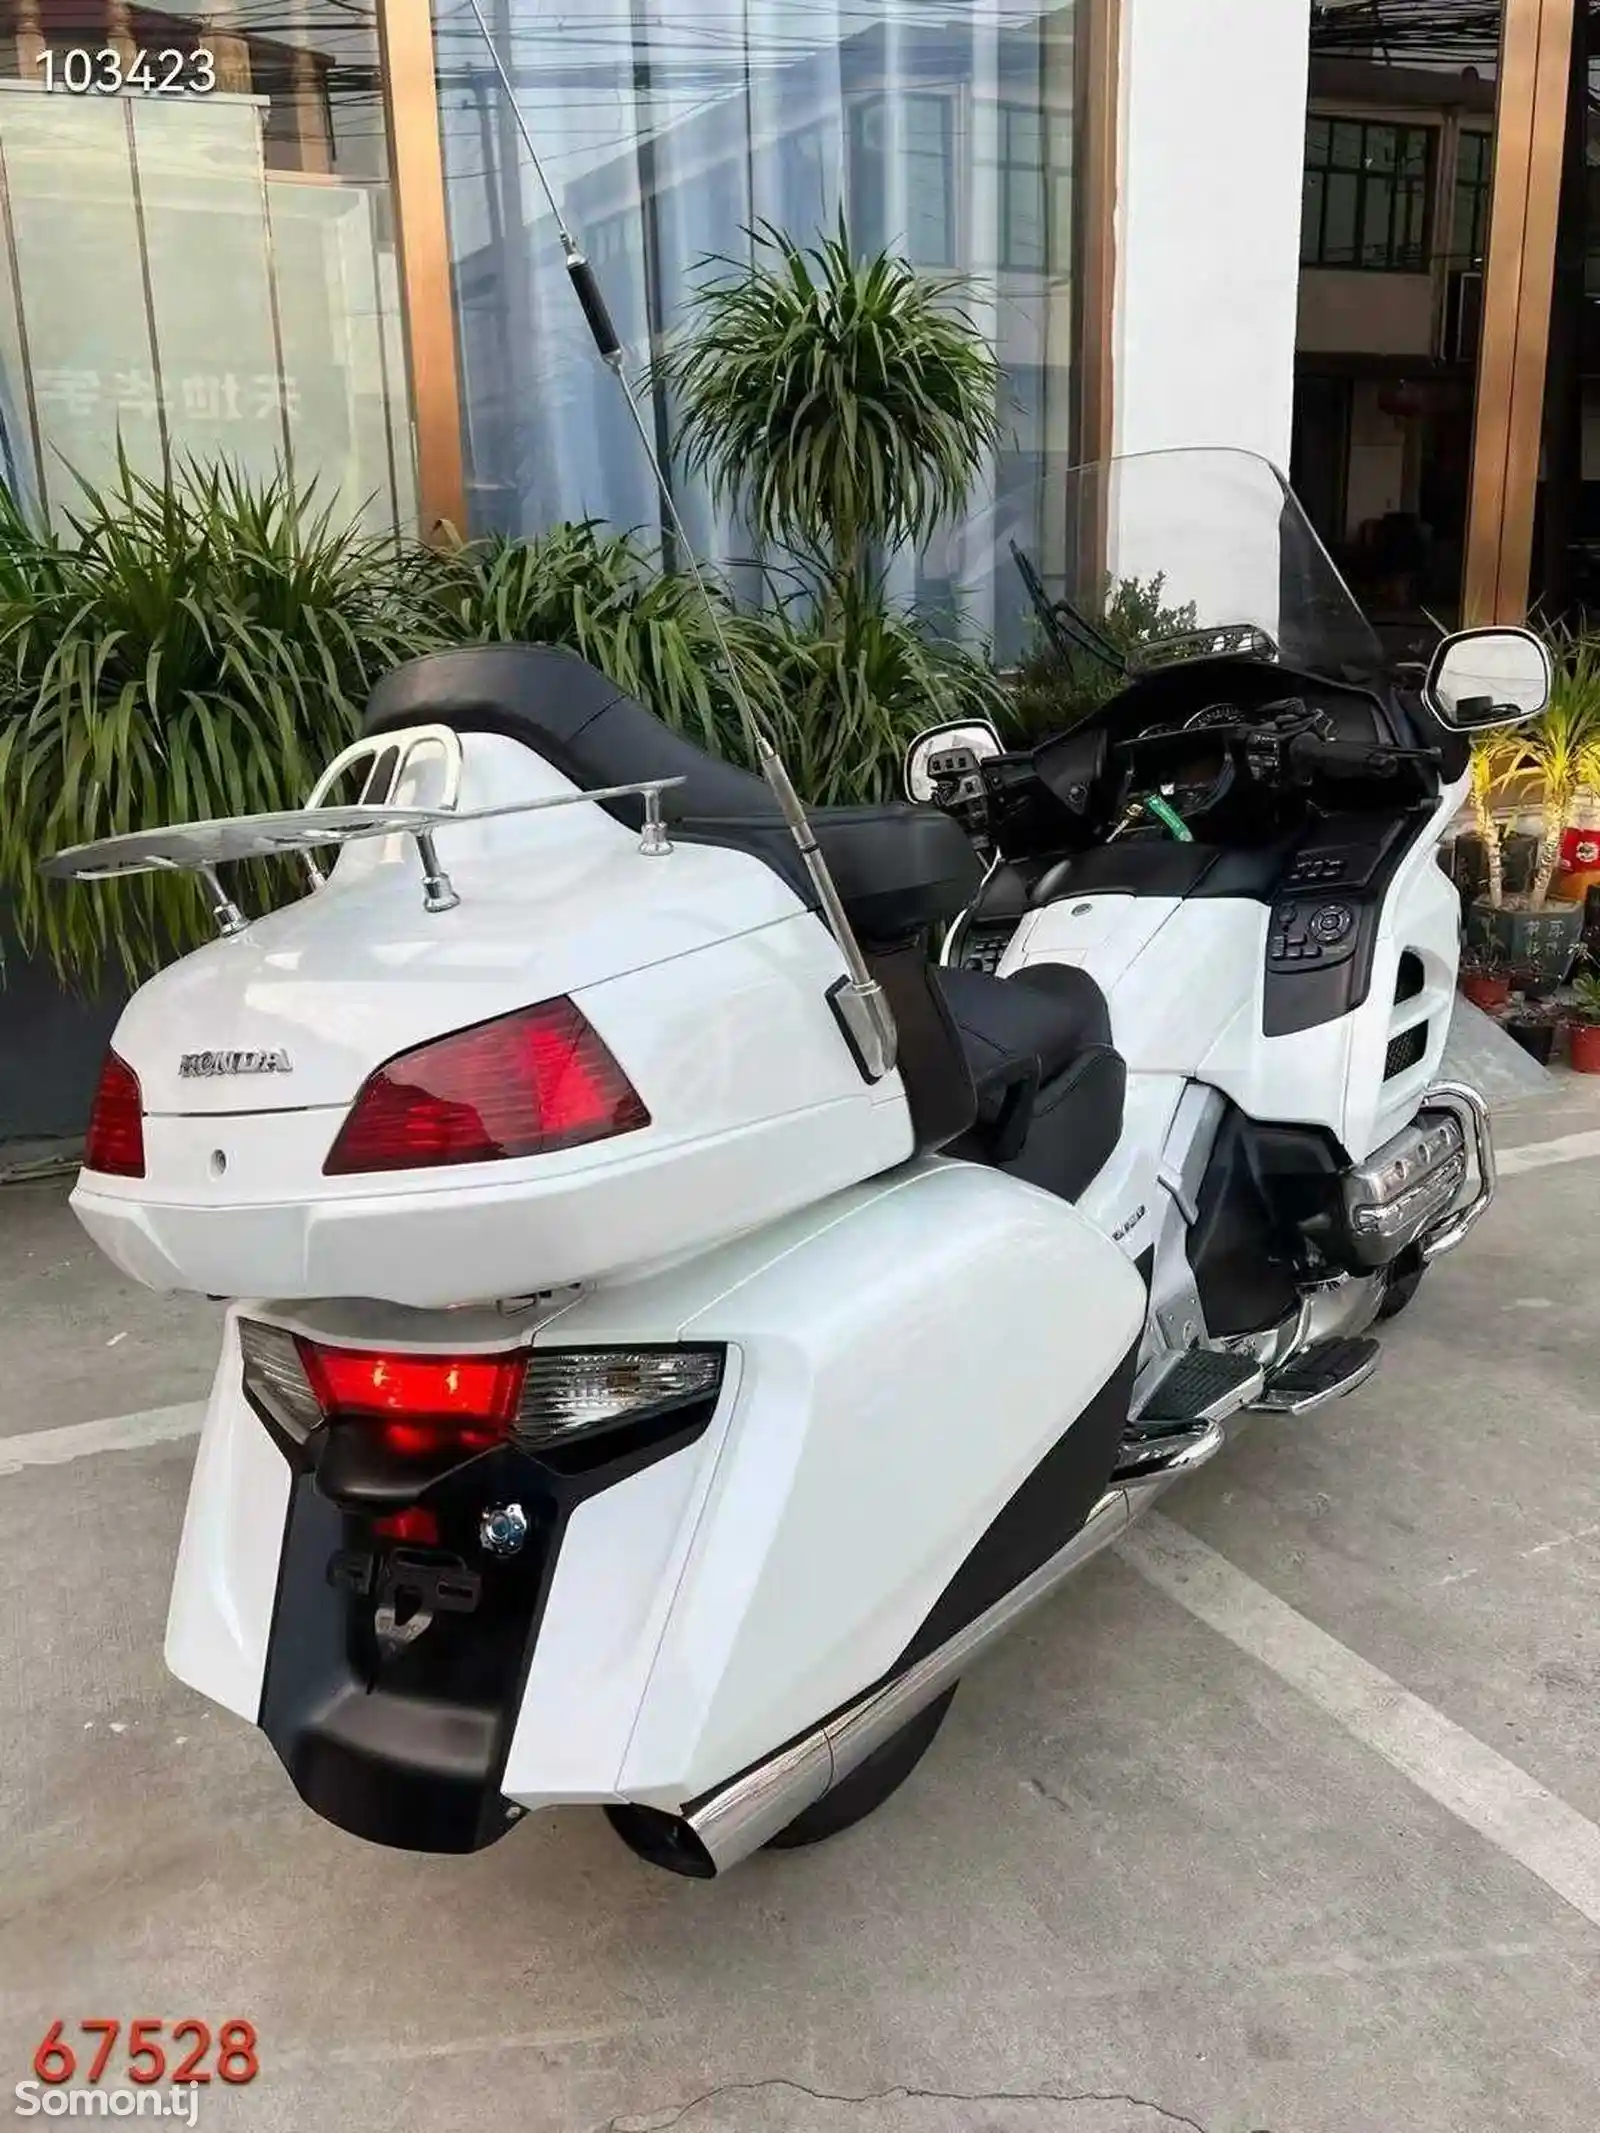 Мотоцикл Honda Gold Wing 1800cc на заказ-5